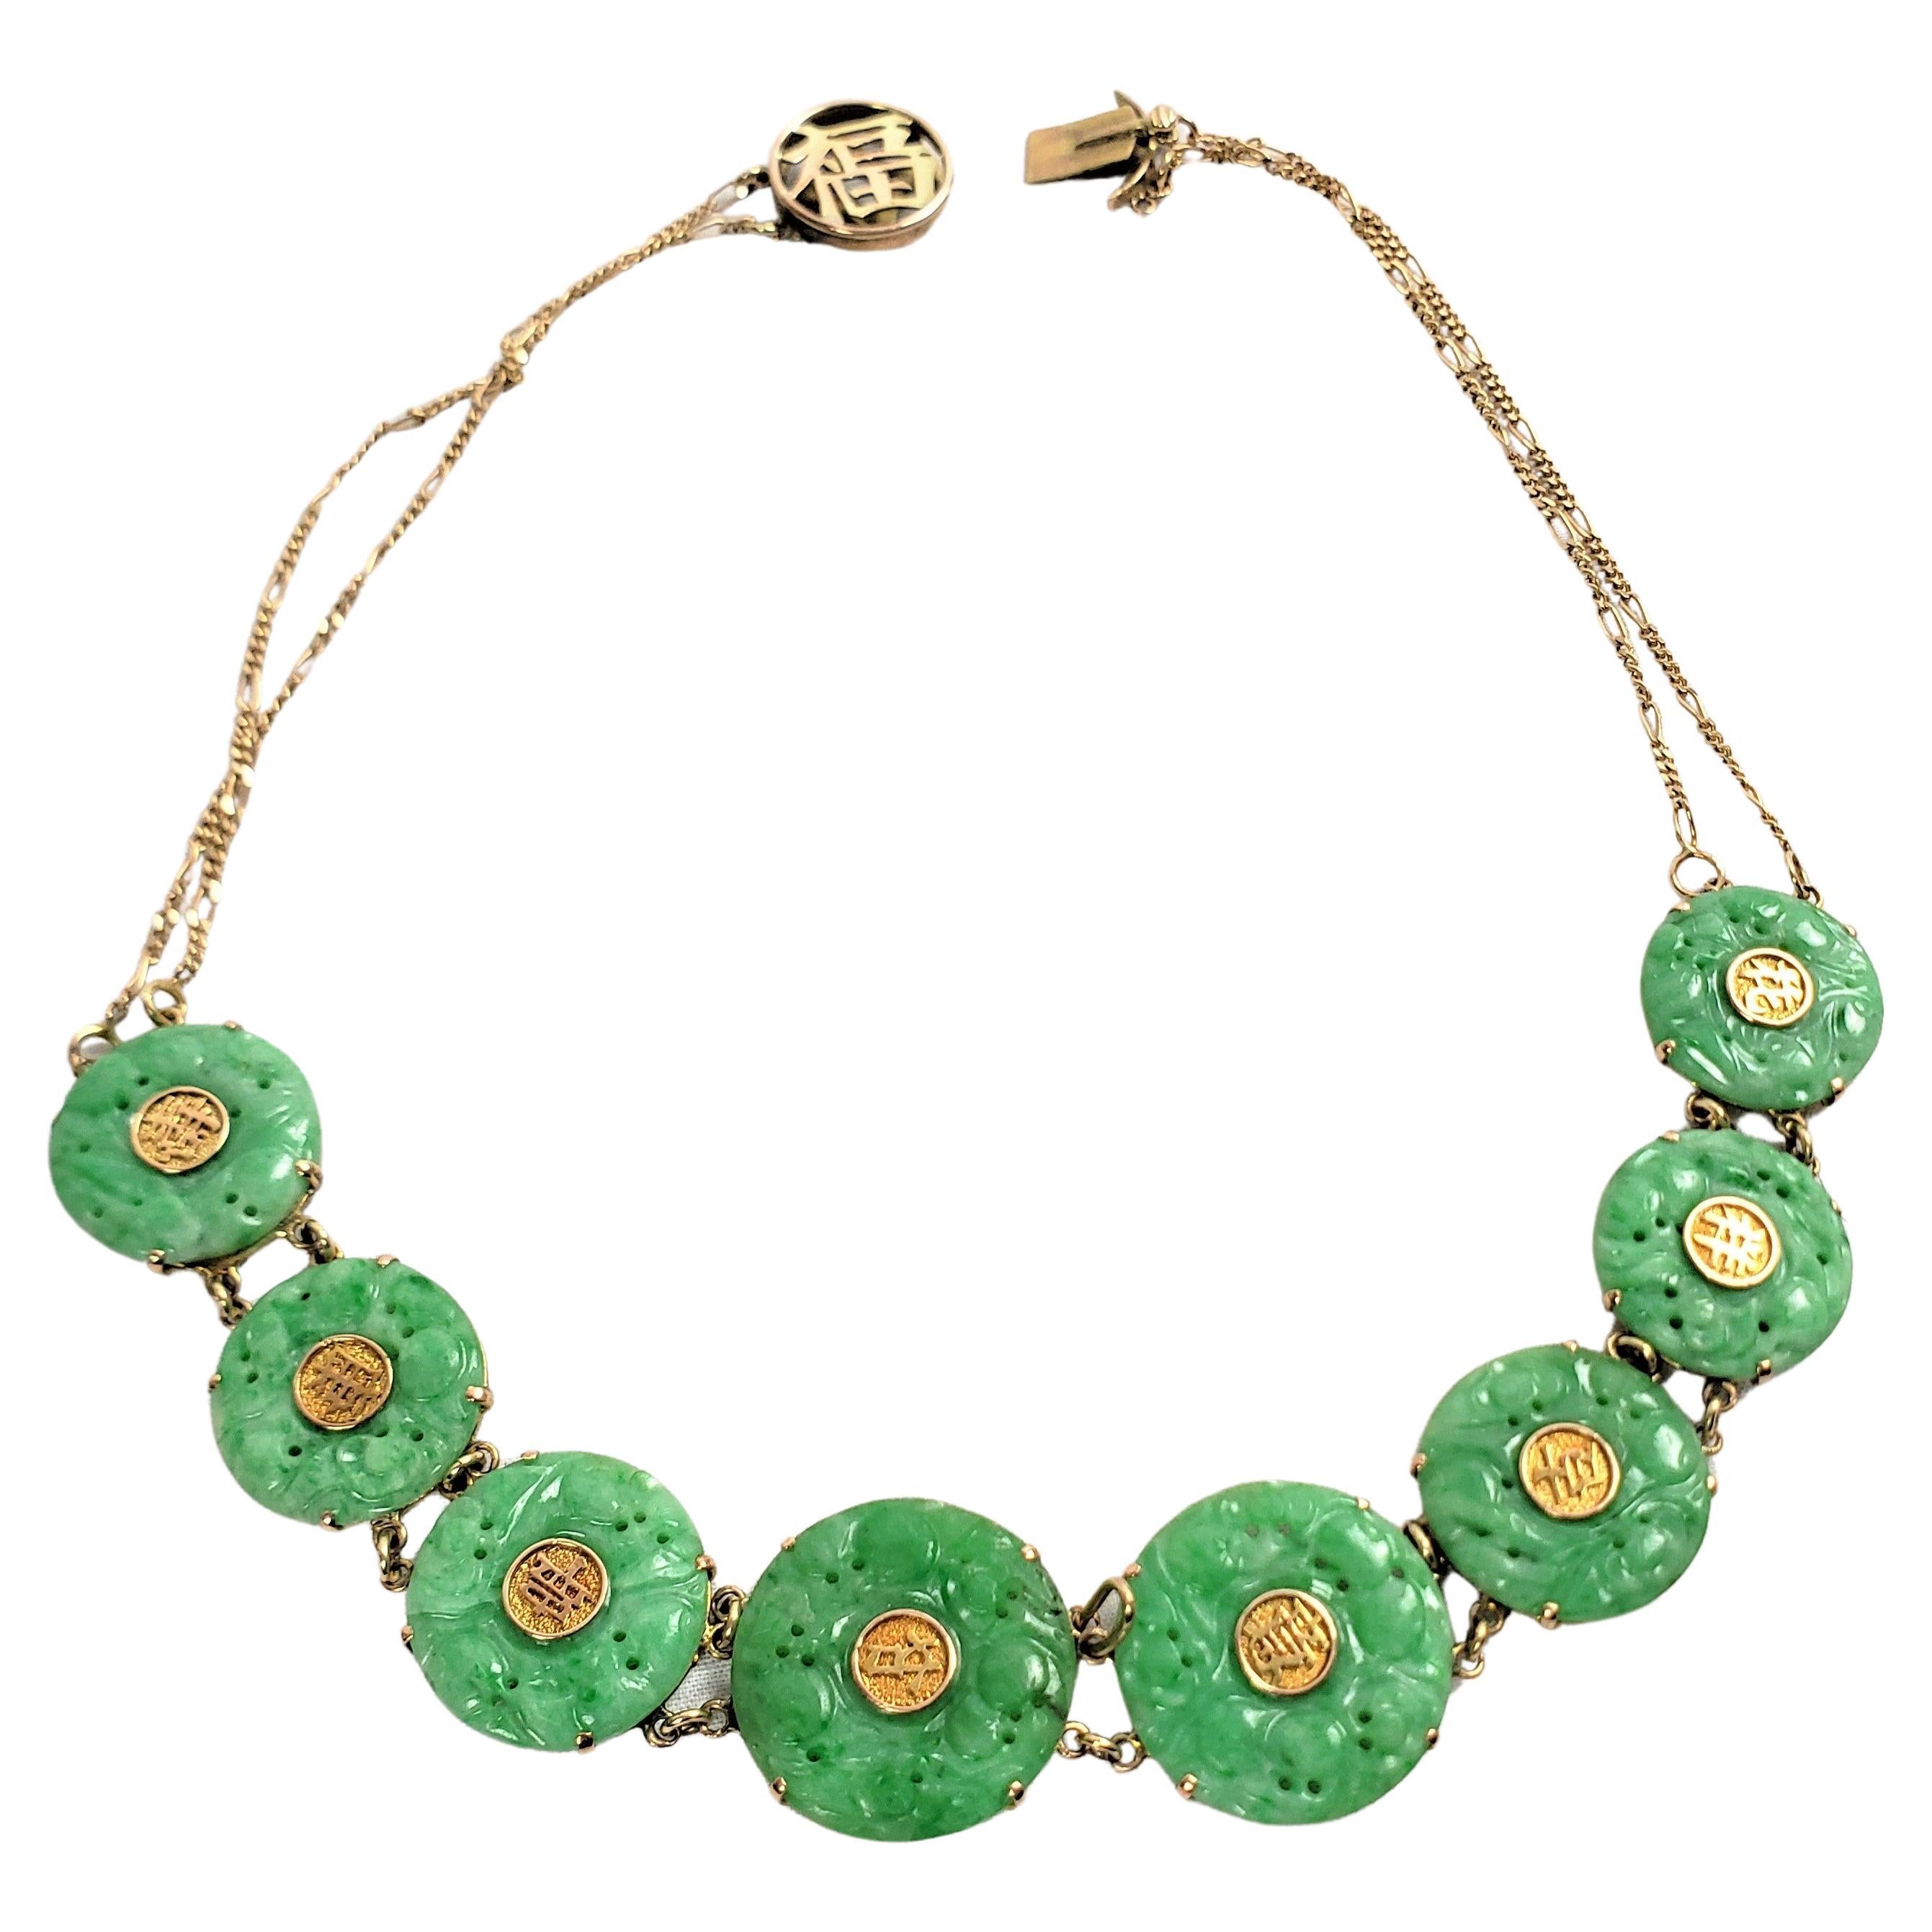 Collier chinois ancien pour femme en or jaune 14 carats et jade vert pomme